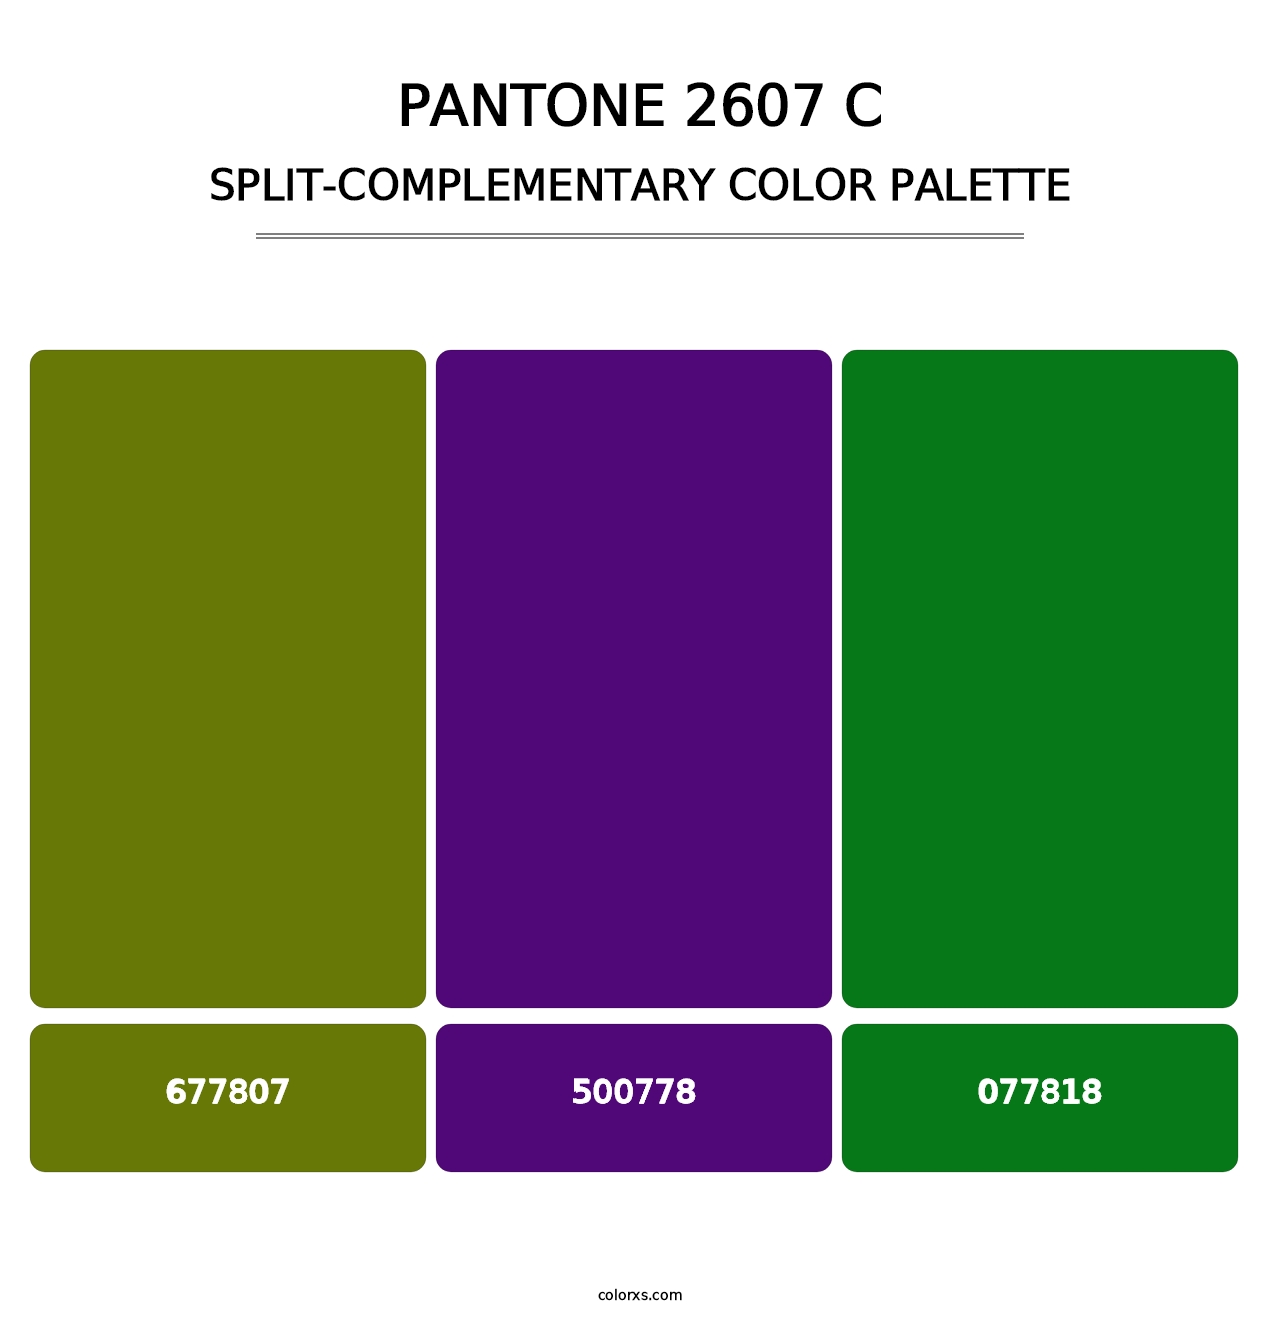 PANTONE 2607 C - Split-Complementary Color Palette